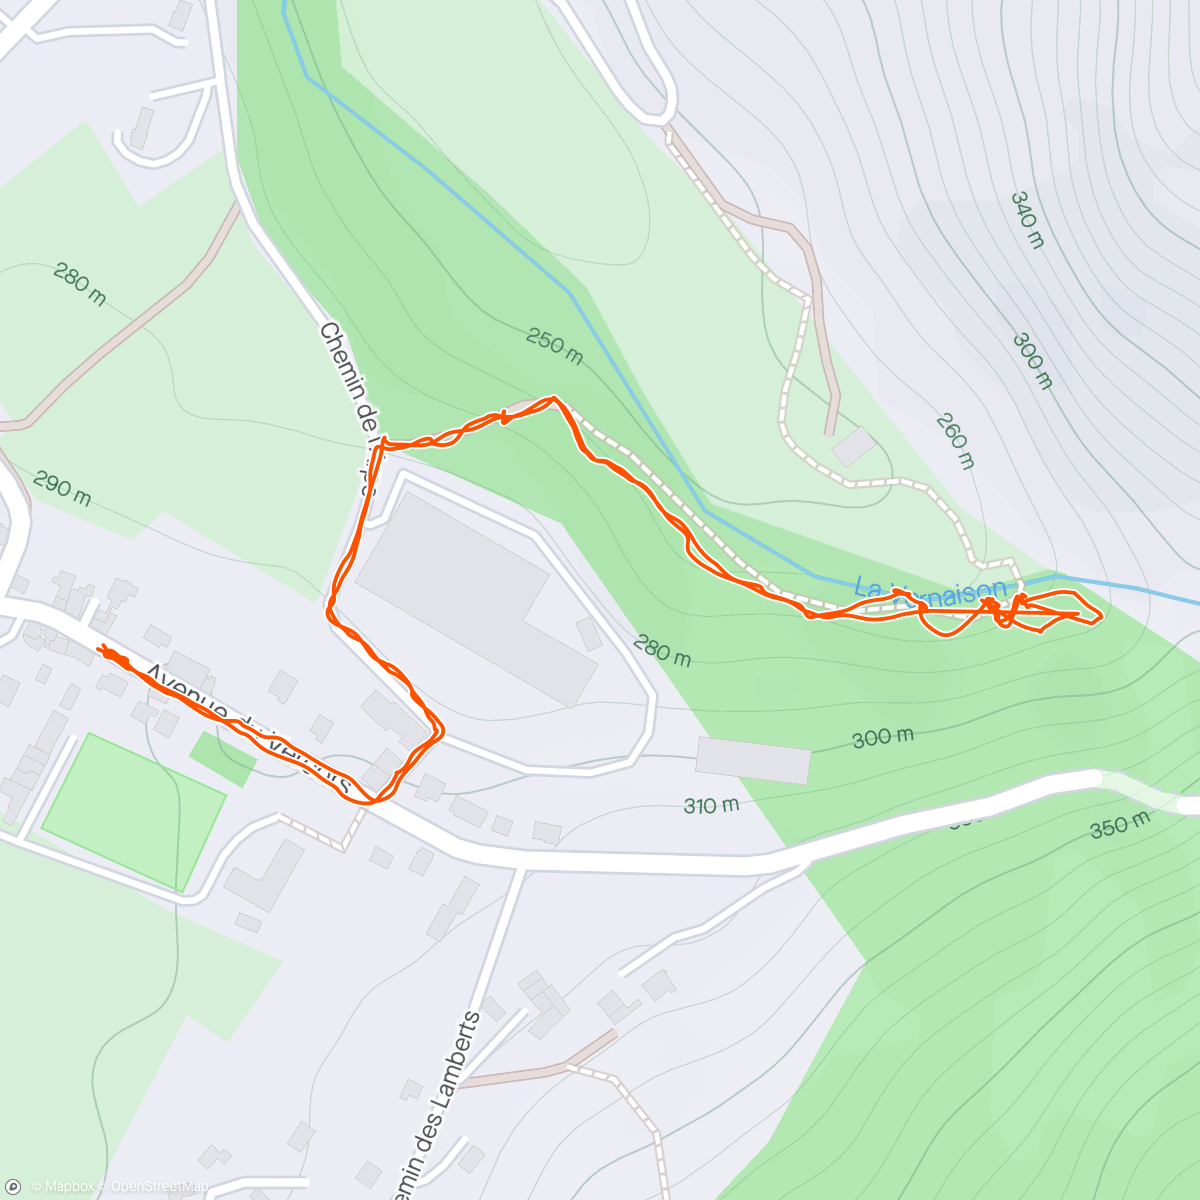 「Grotte de Choranche」活動的地圖